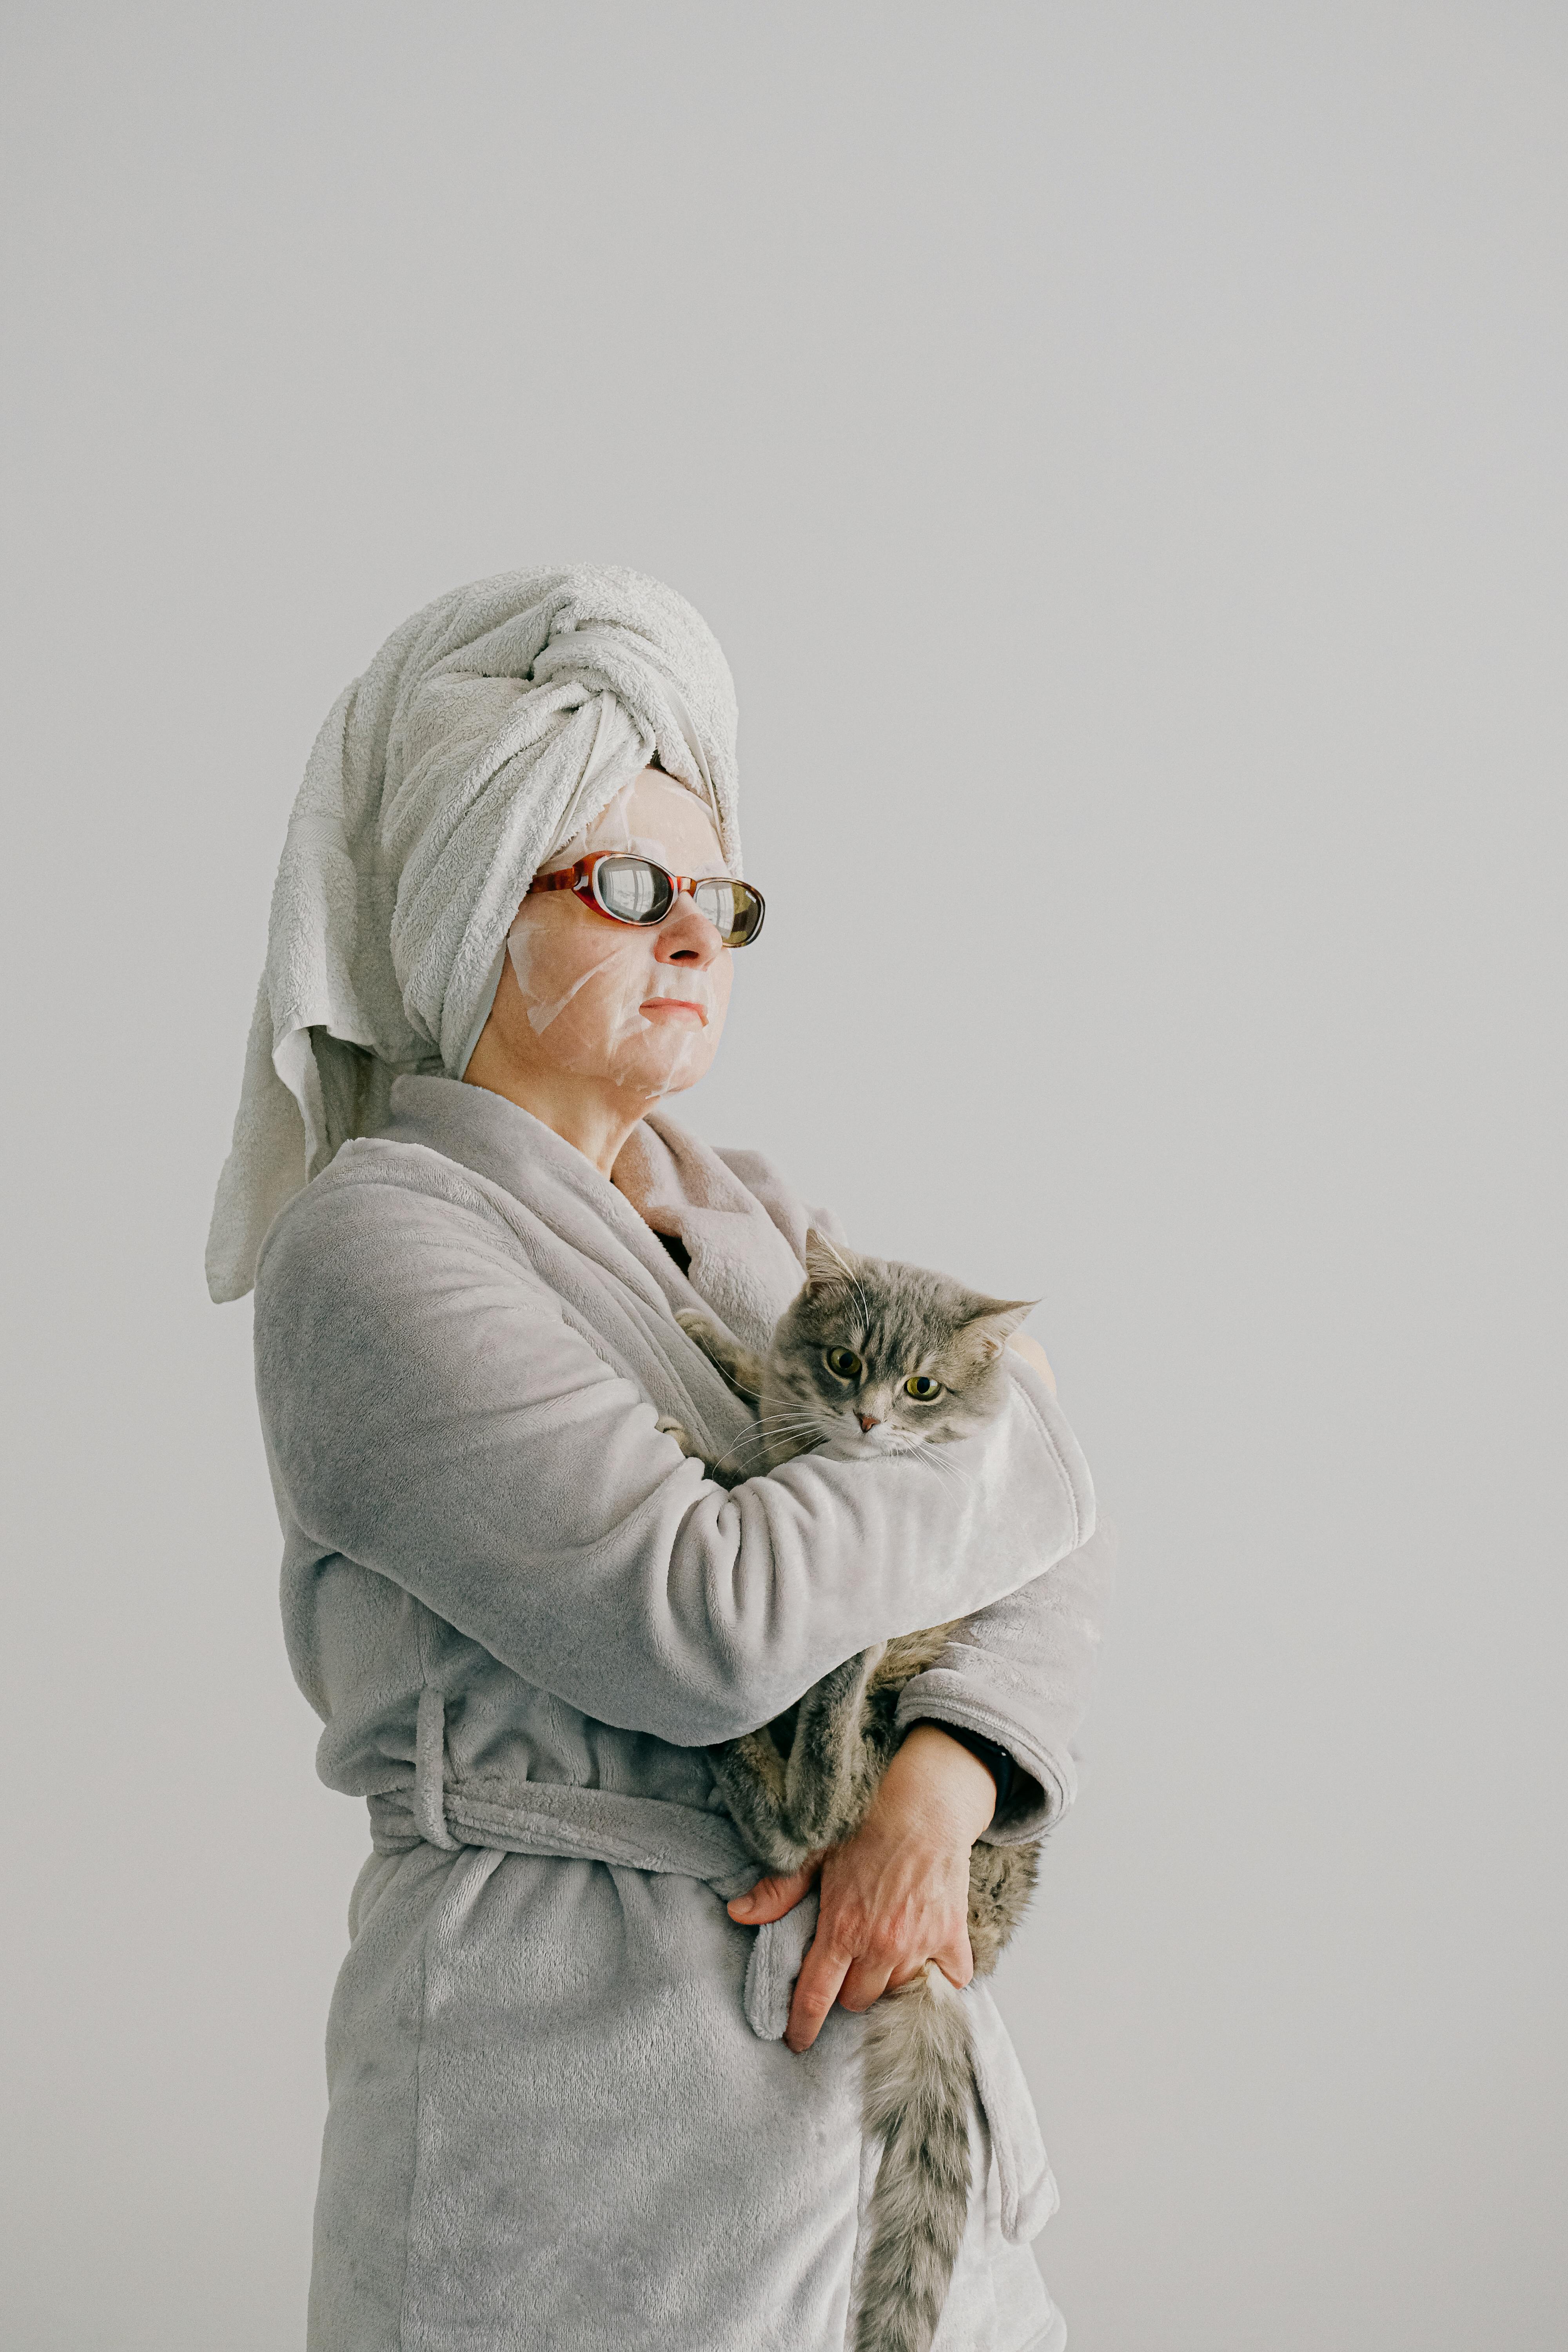 Una mujer arrogante vestida con bata y gafas de sol mientras sostiene un gato | Fuente: Pexels